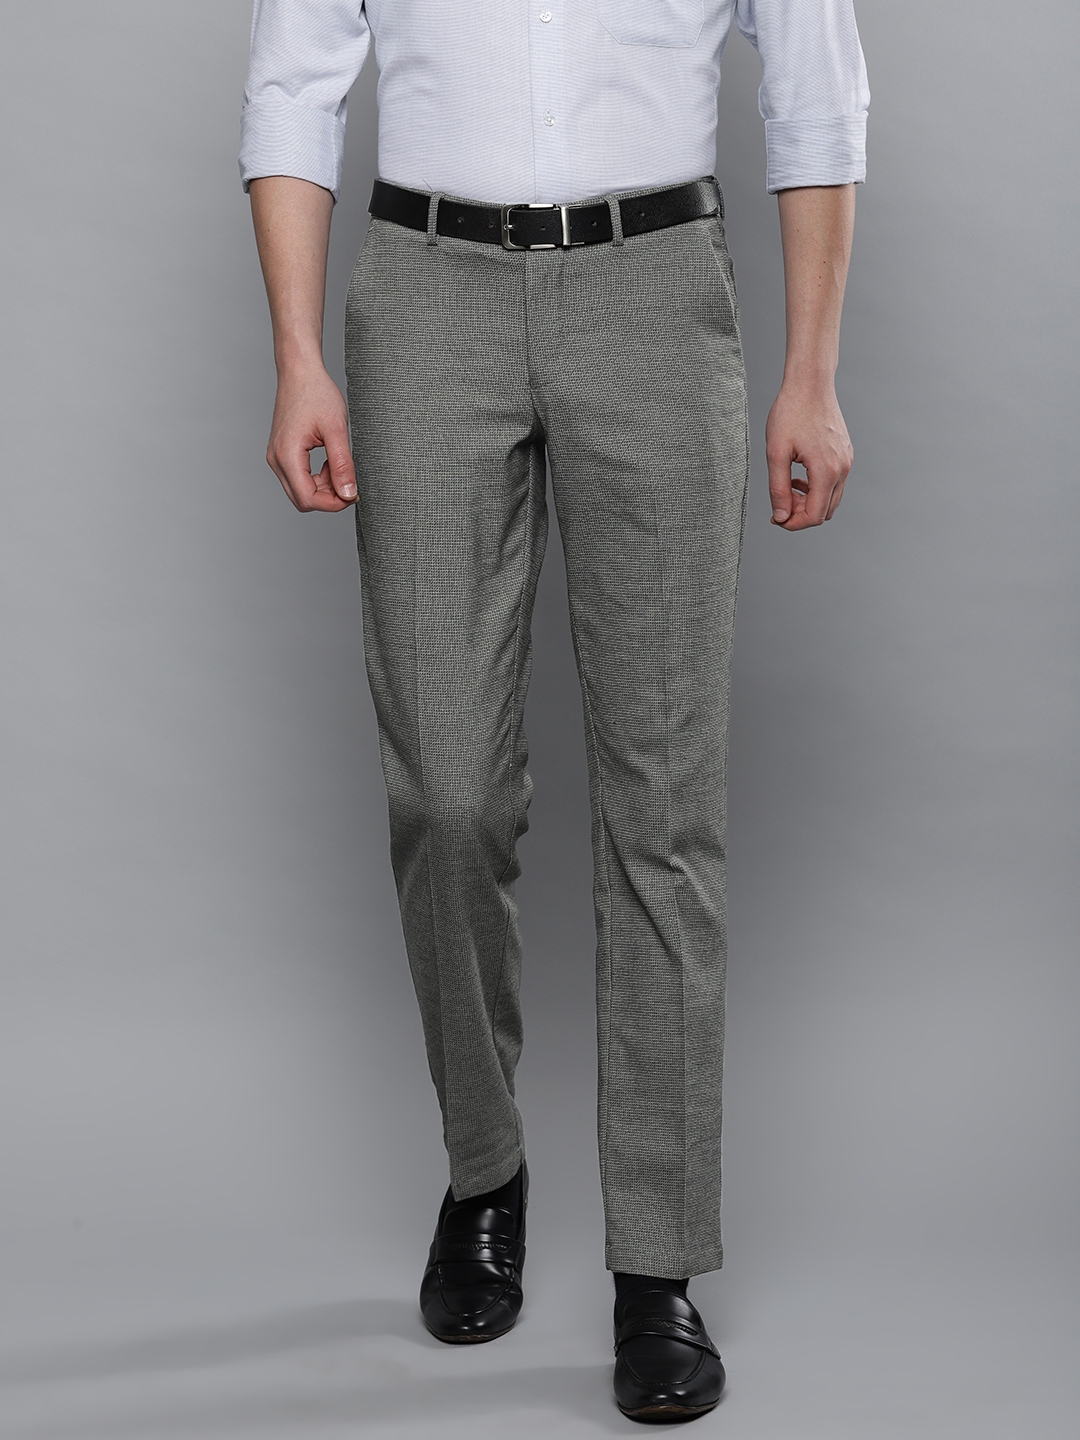 Buy Louis Philippe Men Grey Slim Fit Self Design Formal Trousers ...